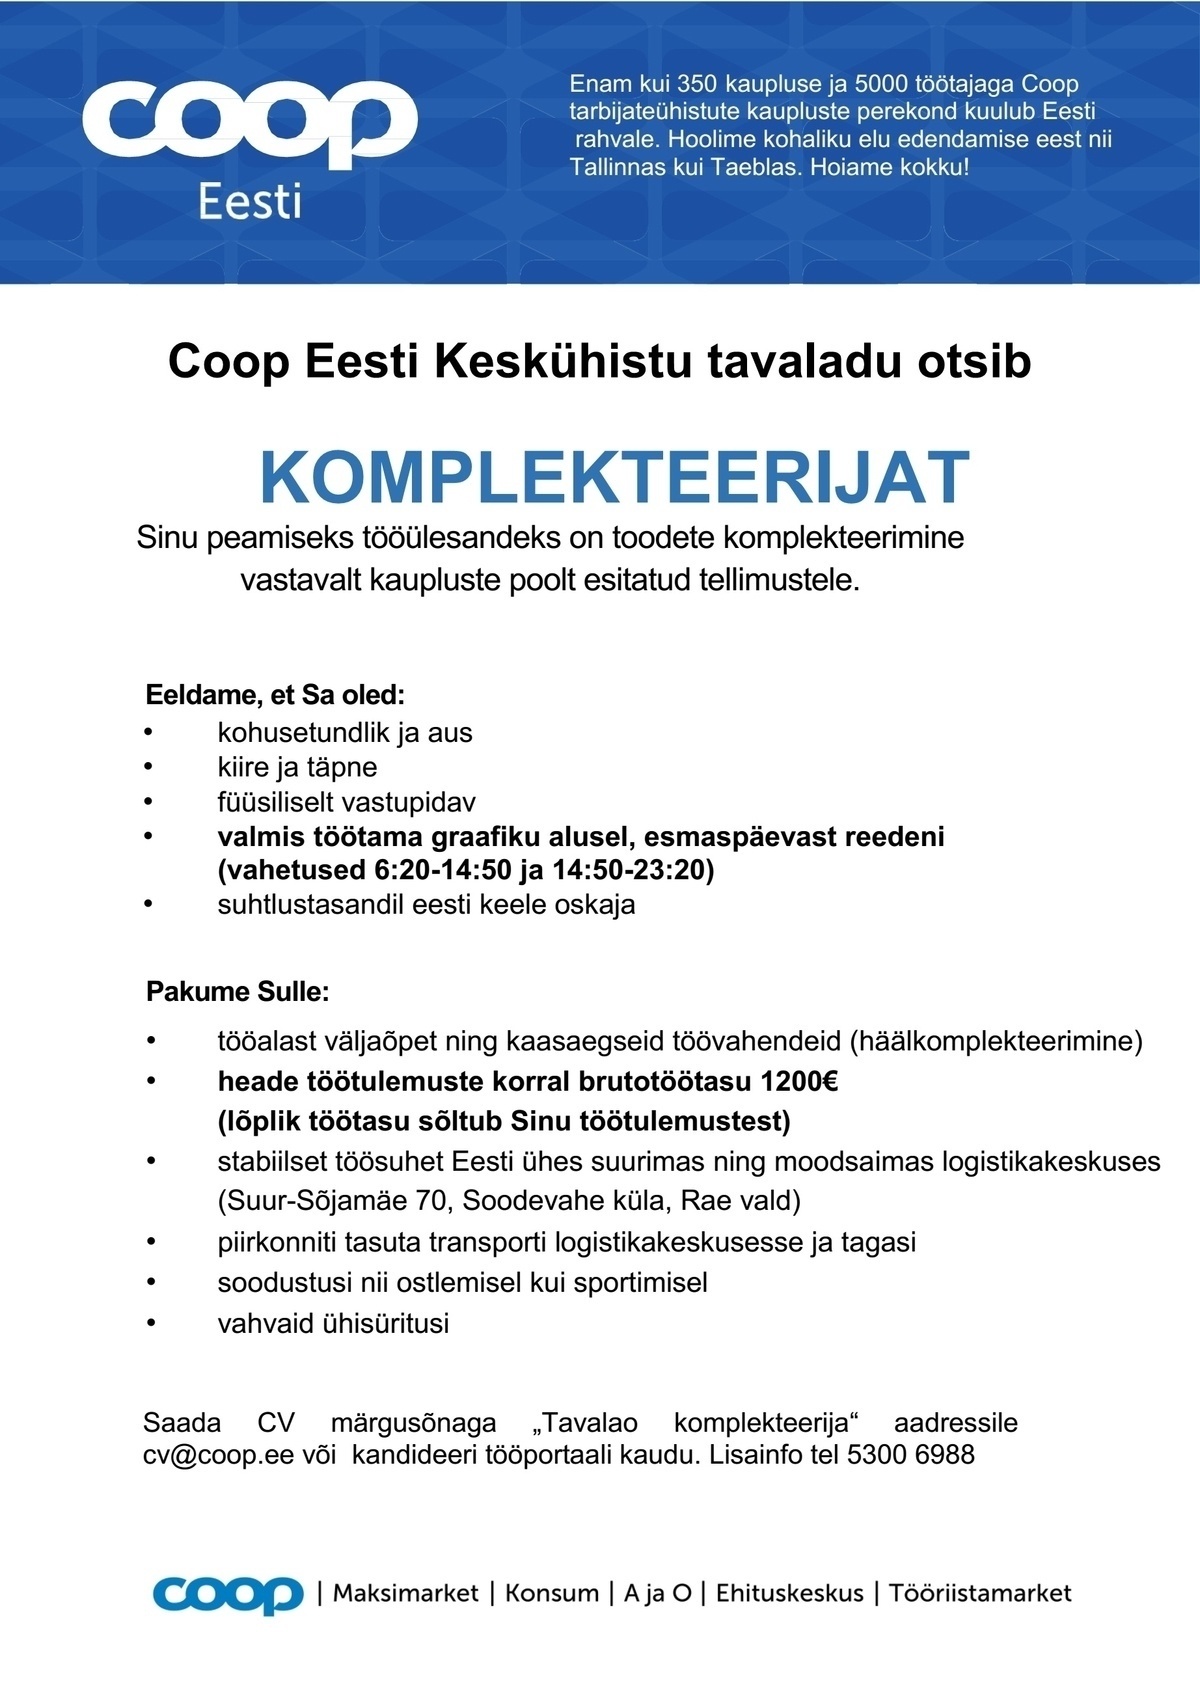 Coop Eesti Keskühistu Komplekteerija (tavaladu)